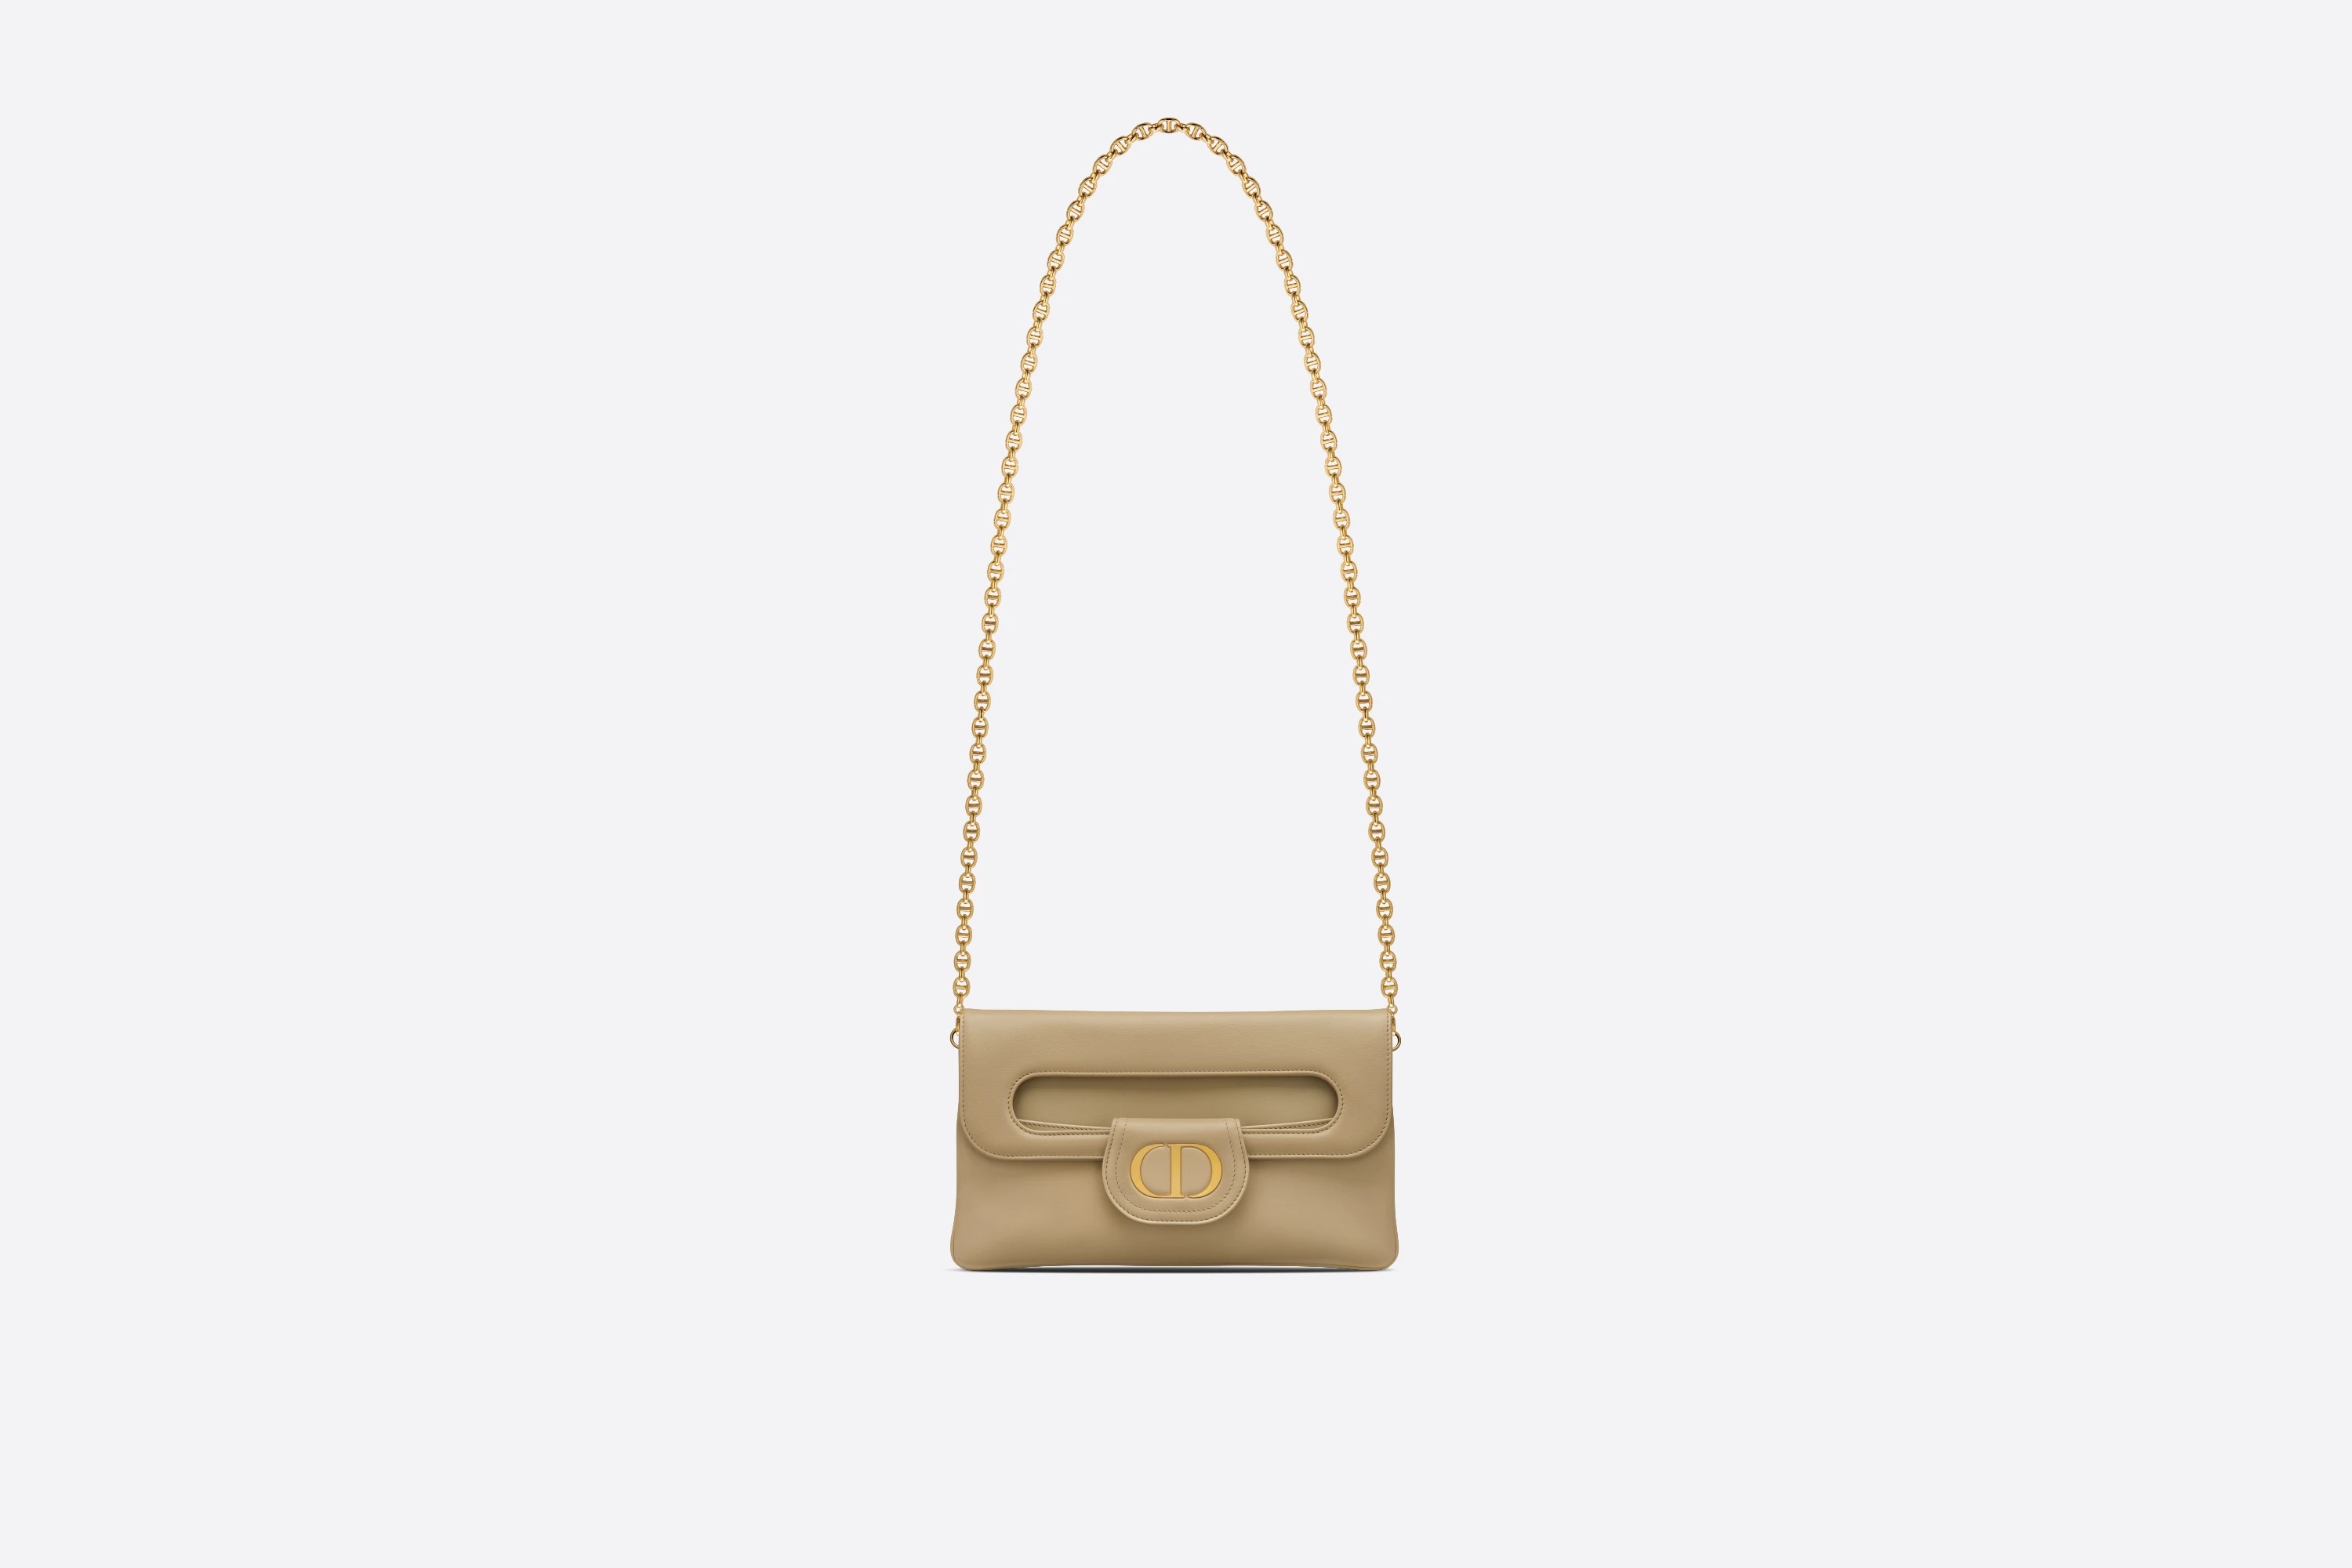 Medium DiorDouble Bag - 4